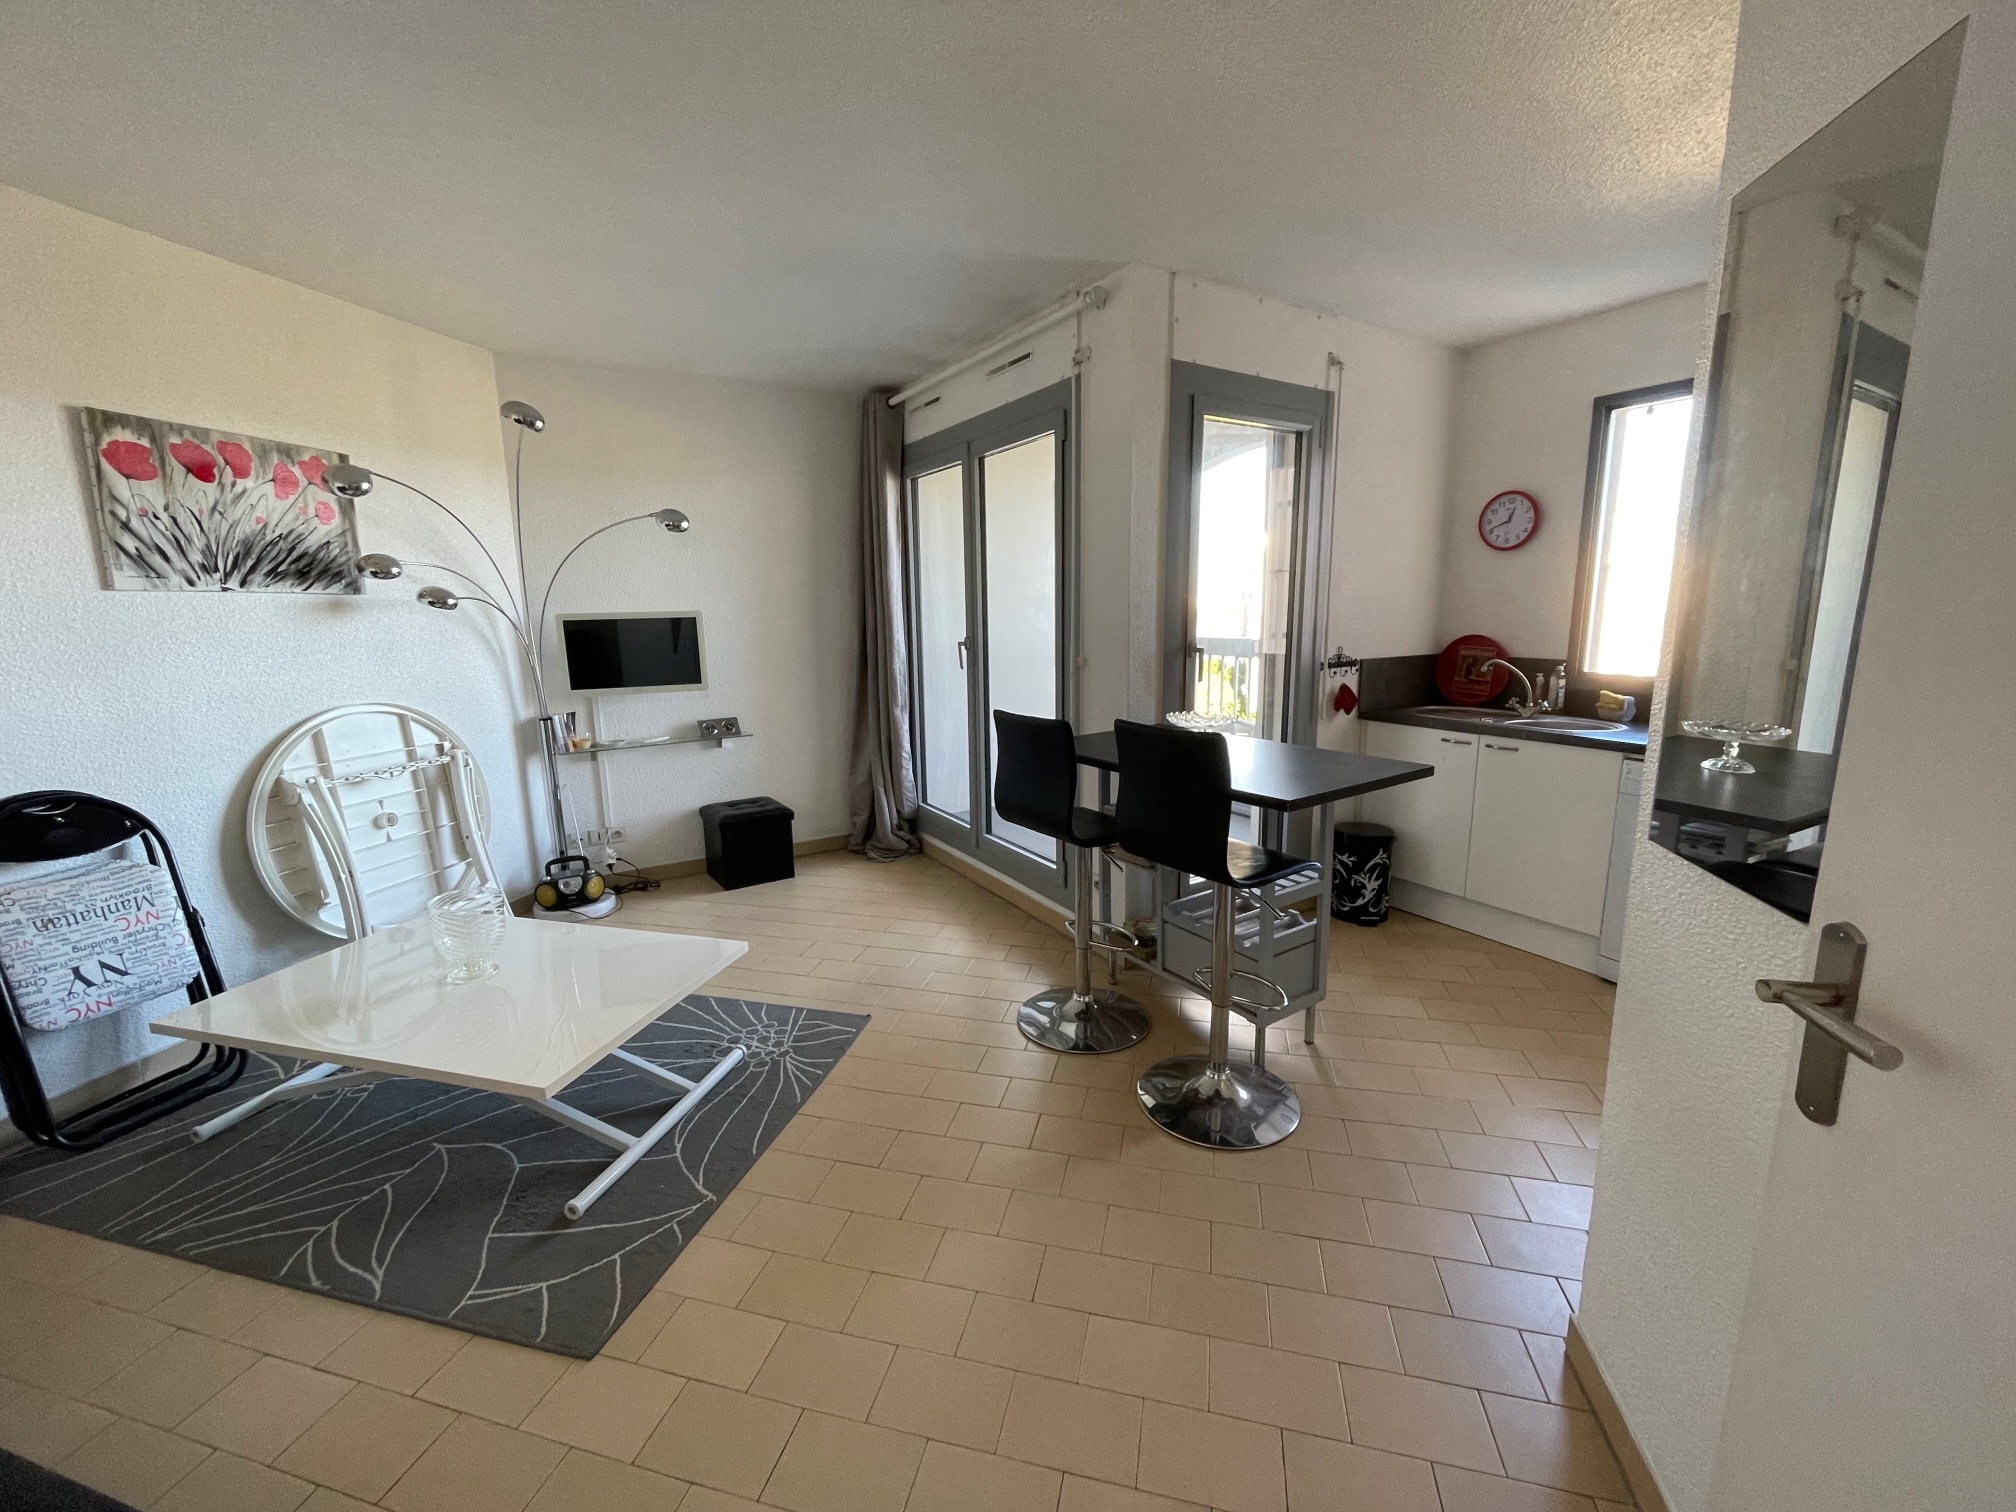 À vendre appartement de 30m2 à st cyprien plage (66750) - Photo 1'